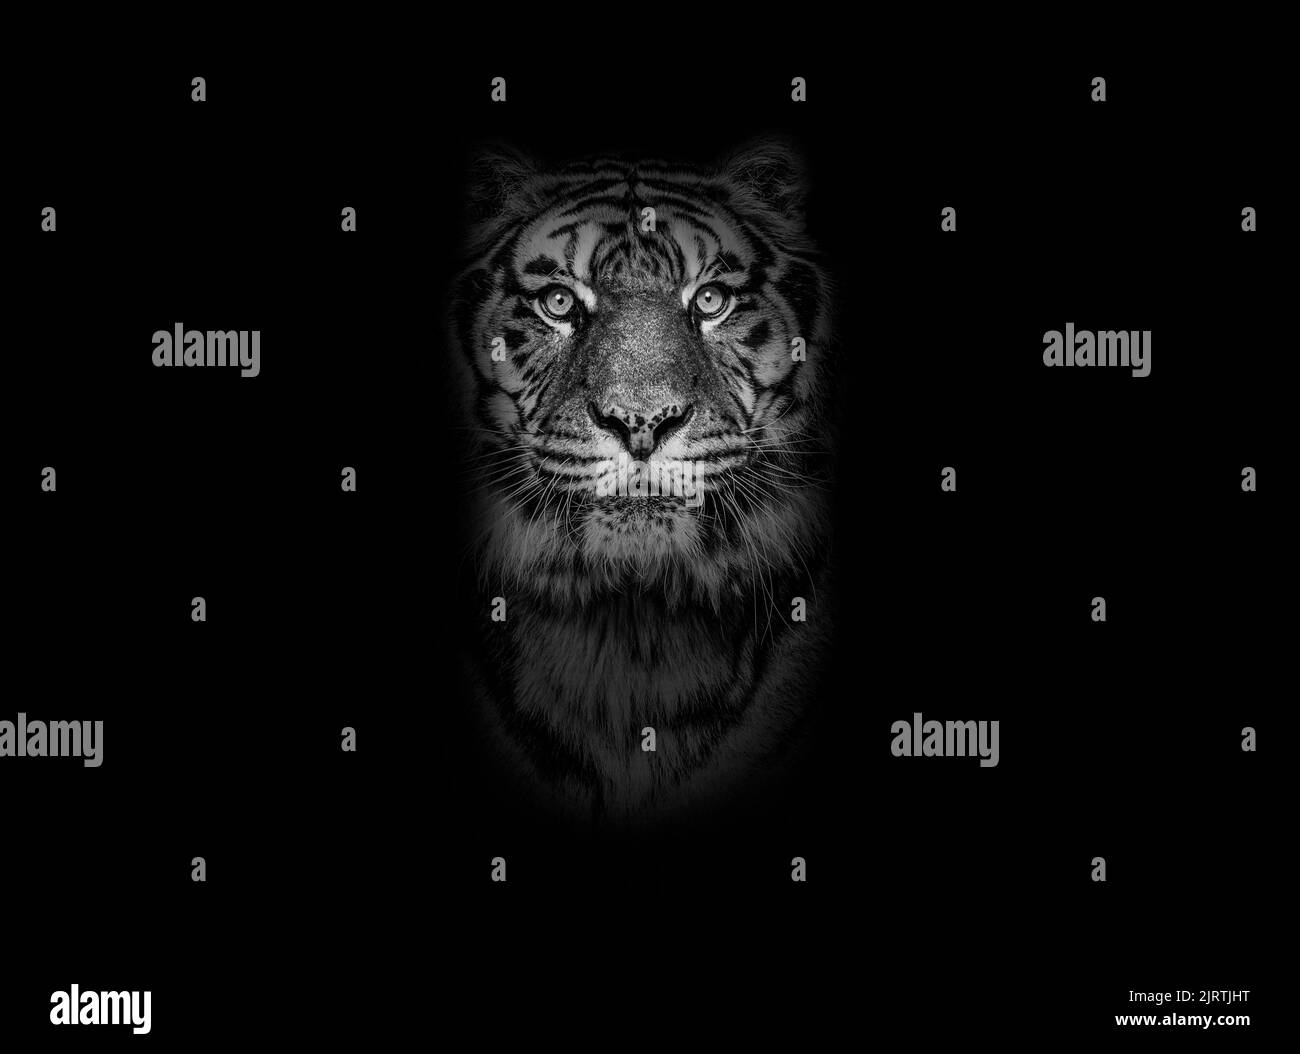 Retrato en blanco y negro de un tigre mirando la cámara sobre un fondo negro Foto de stock